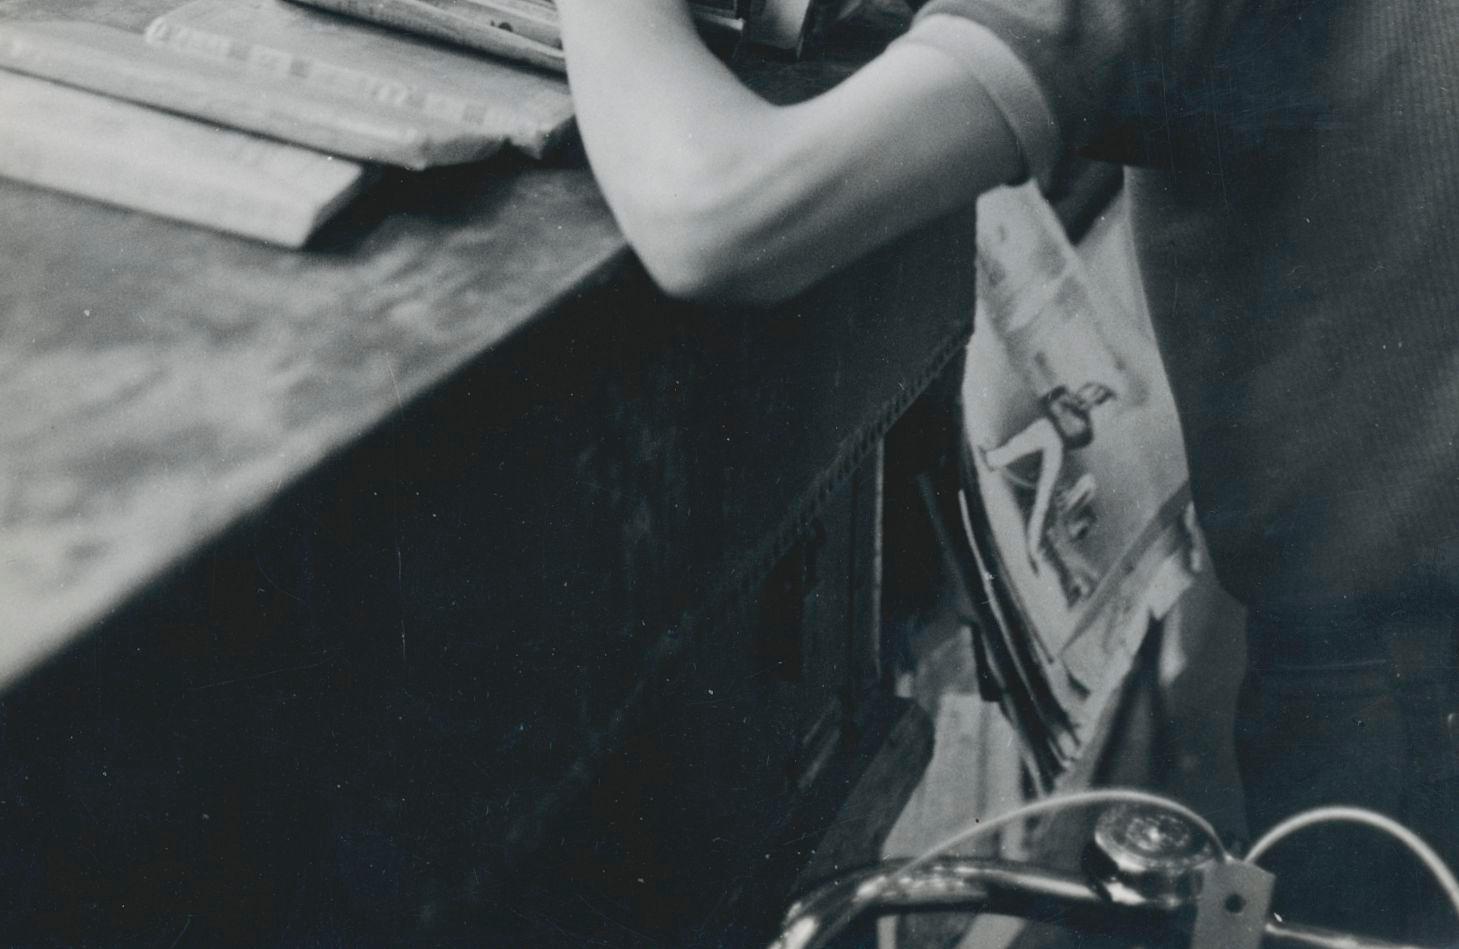 Impression en gélatine argentique par Erich Andres, vers 1950.
Andres est né en 1905 en Allemagne et est décédé en 1992. Il a commencé sa carrière de photographe en 1920. Il a été l'un des premiers photographes à utiliser un Leica. Ses images sont